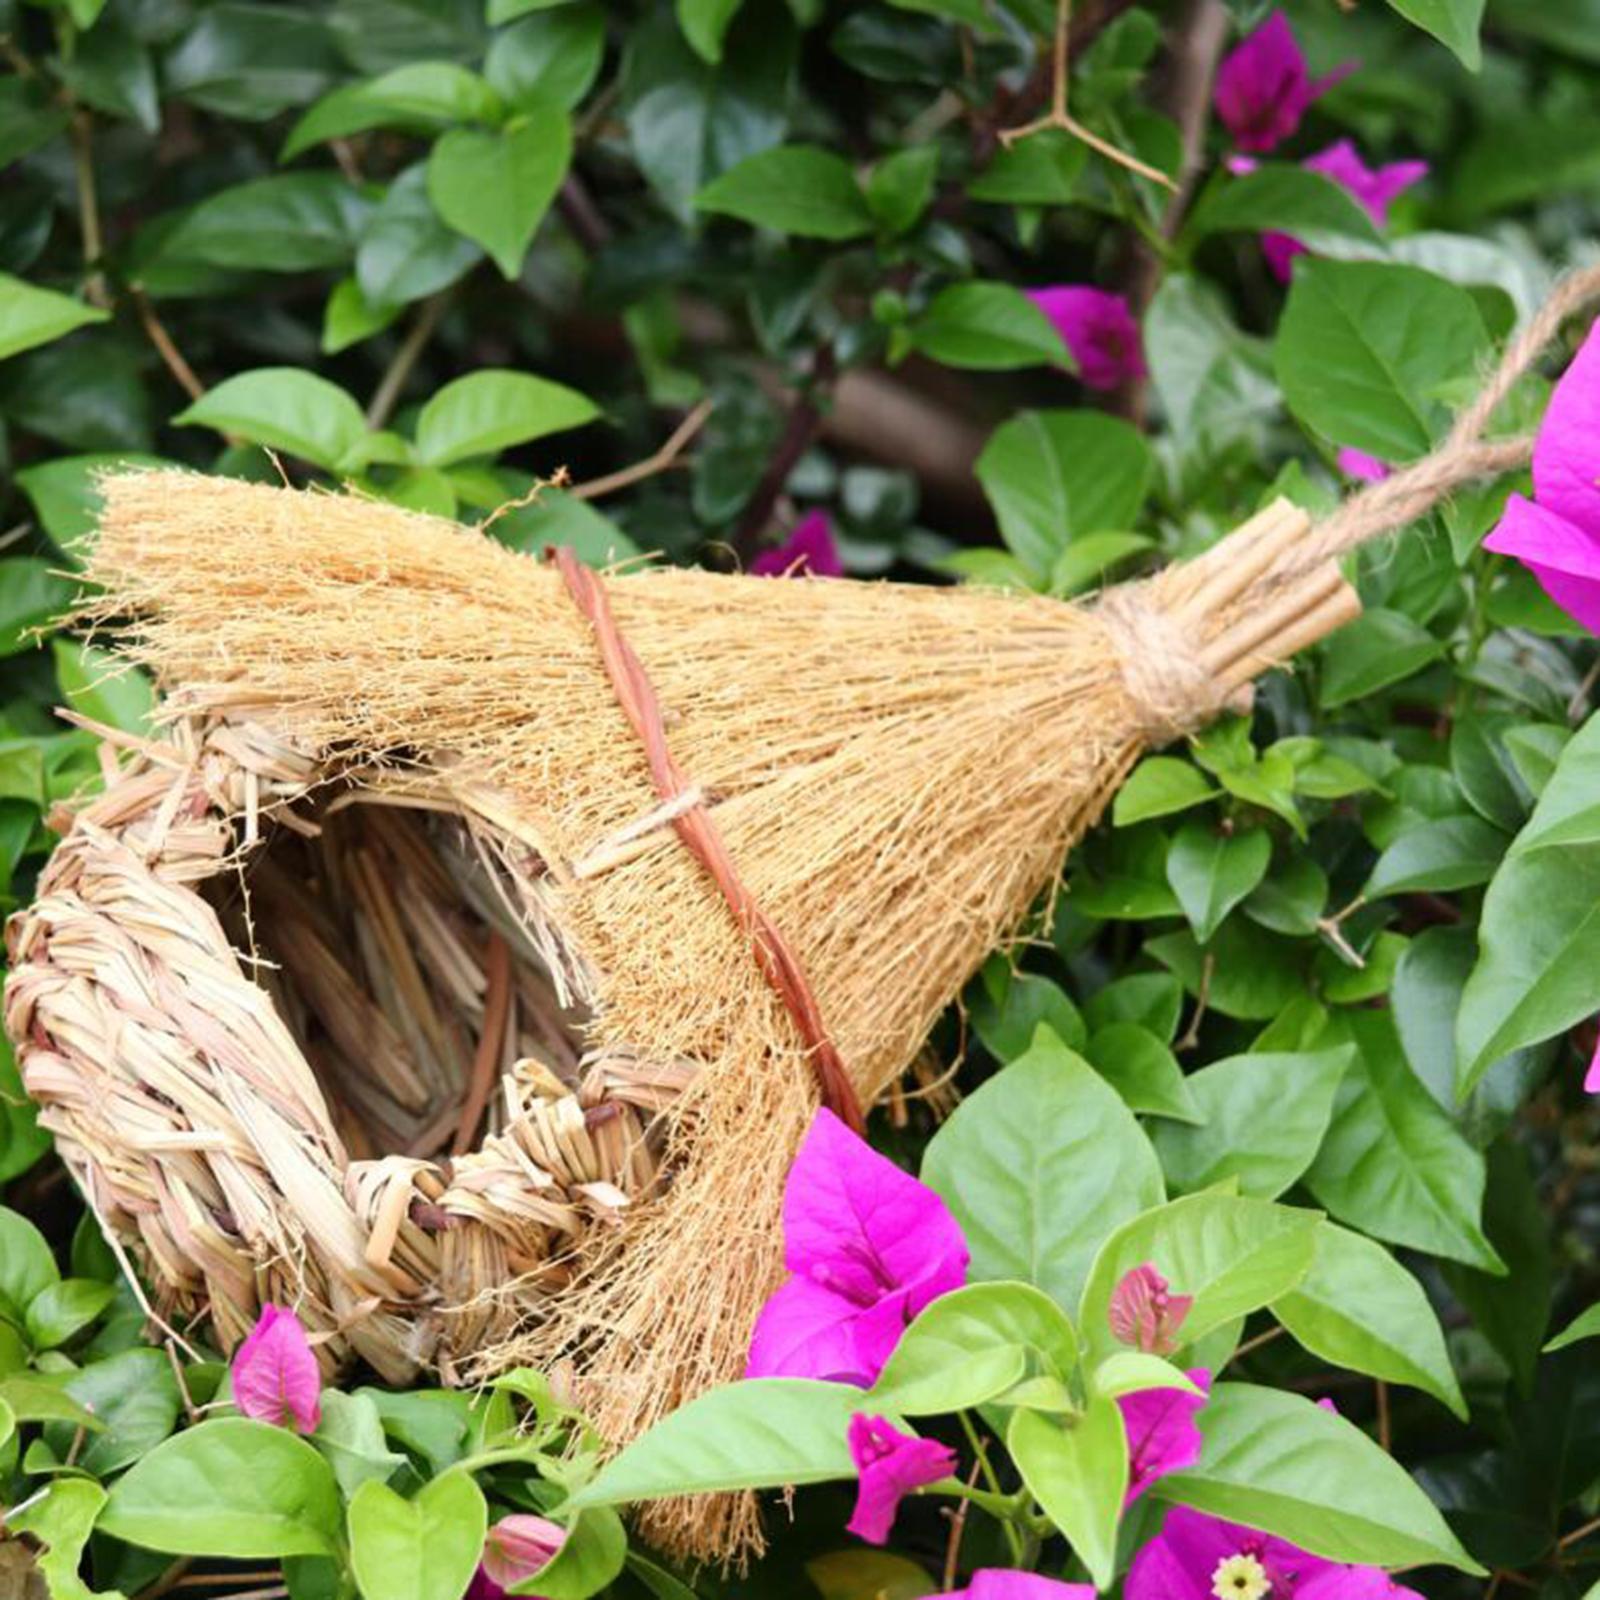 Grass Birds Nest Shelter Hut, Hand Woven Bird House, Bird House Finch, Bird House for Home Outdoor Outside Garden